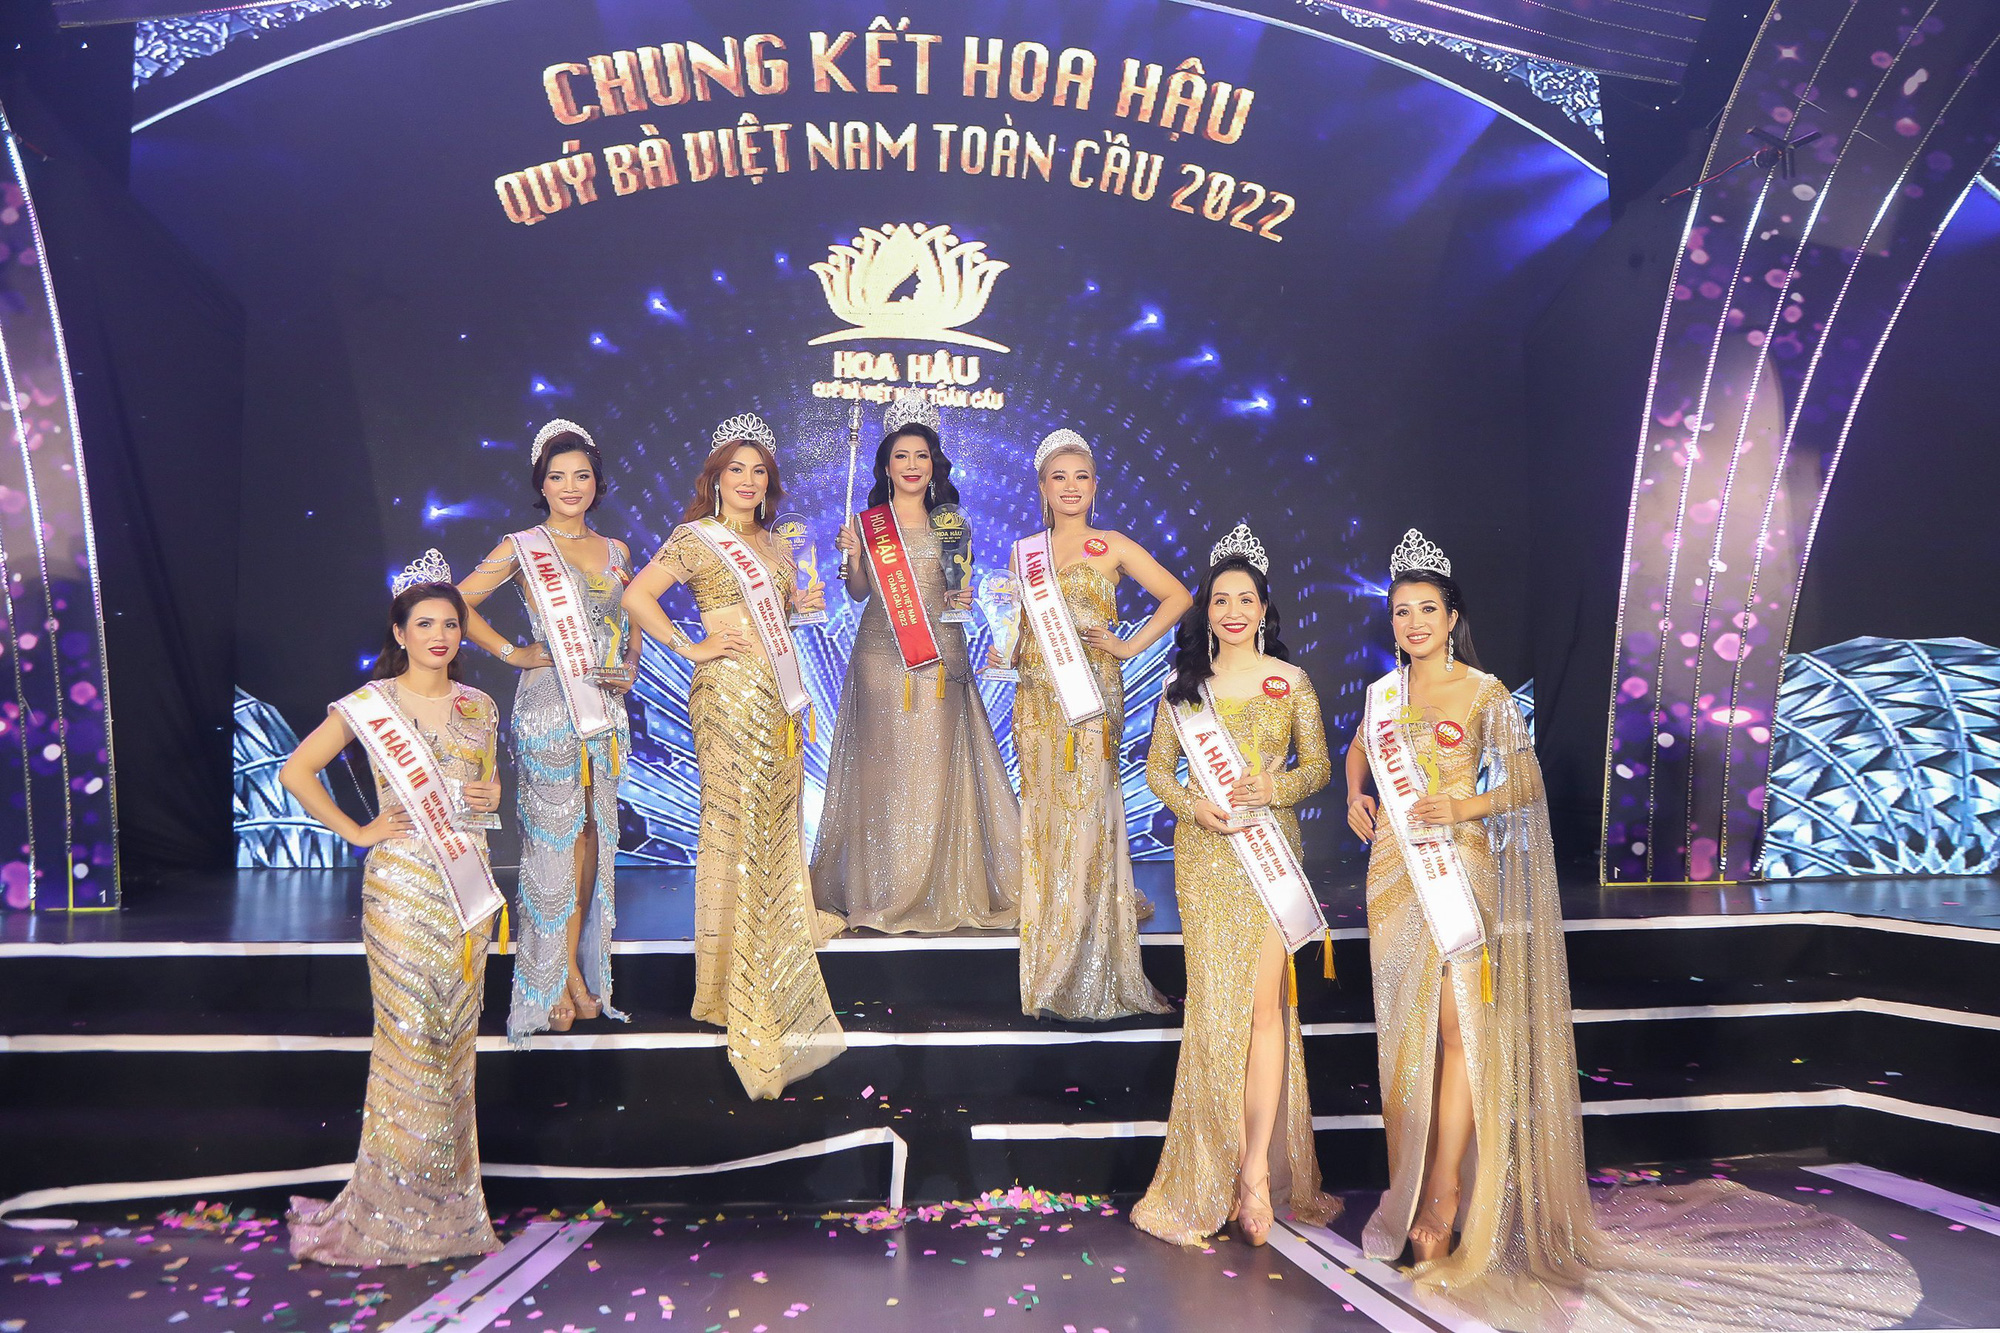 Nhóm thí sinh đạt giải trong đêm chung kết Hoa hậu Quý bà Việt Nam Toàn cầu 2022, diễn ra hồi tháng 4, tại TP Đà Nẵng